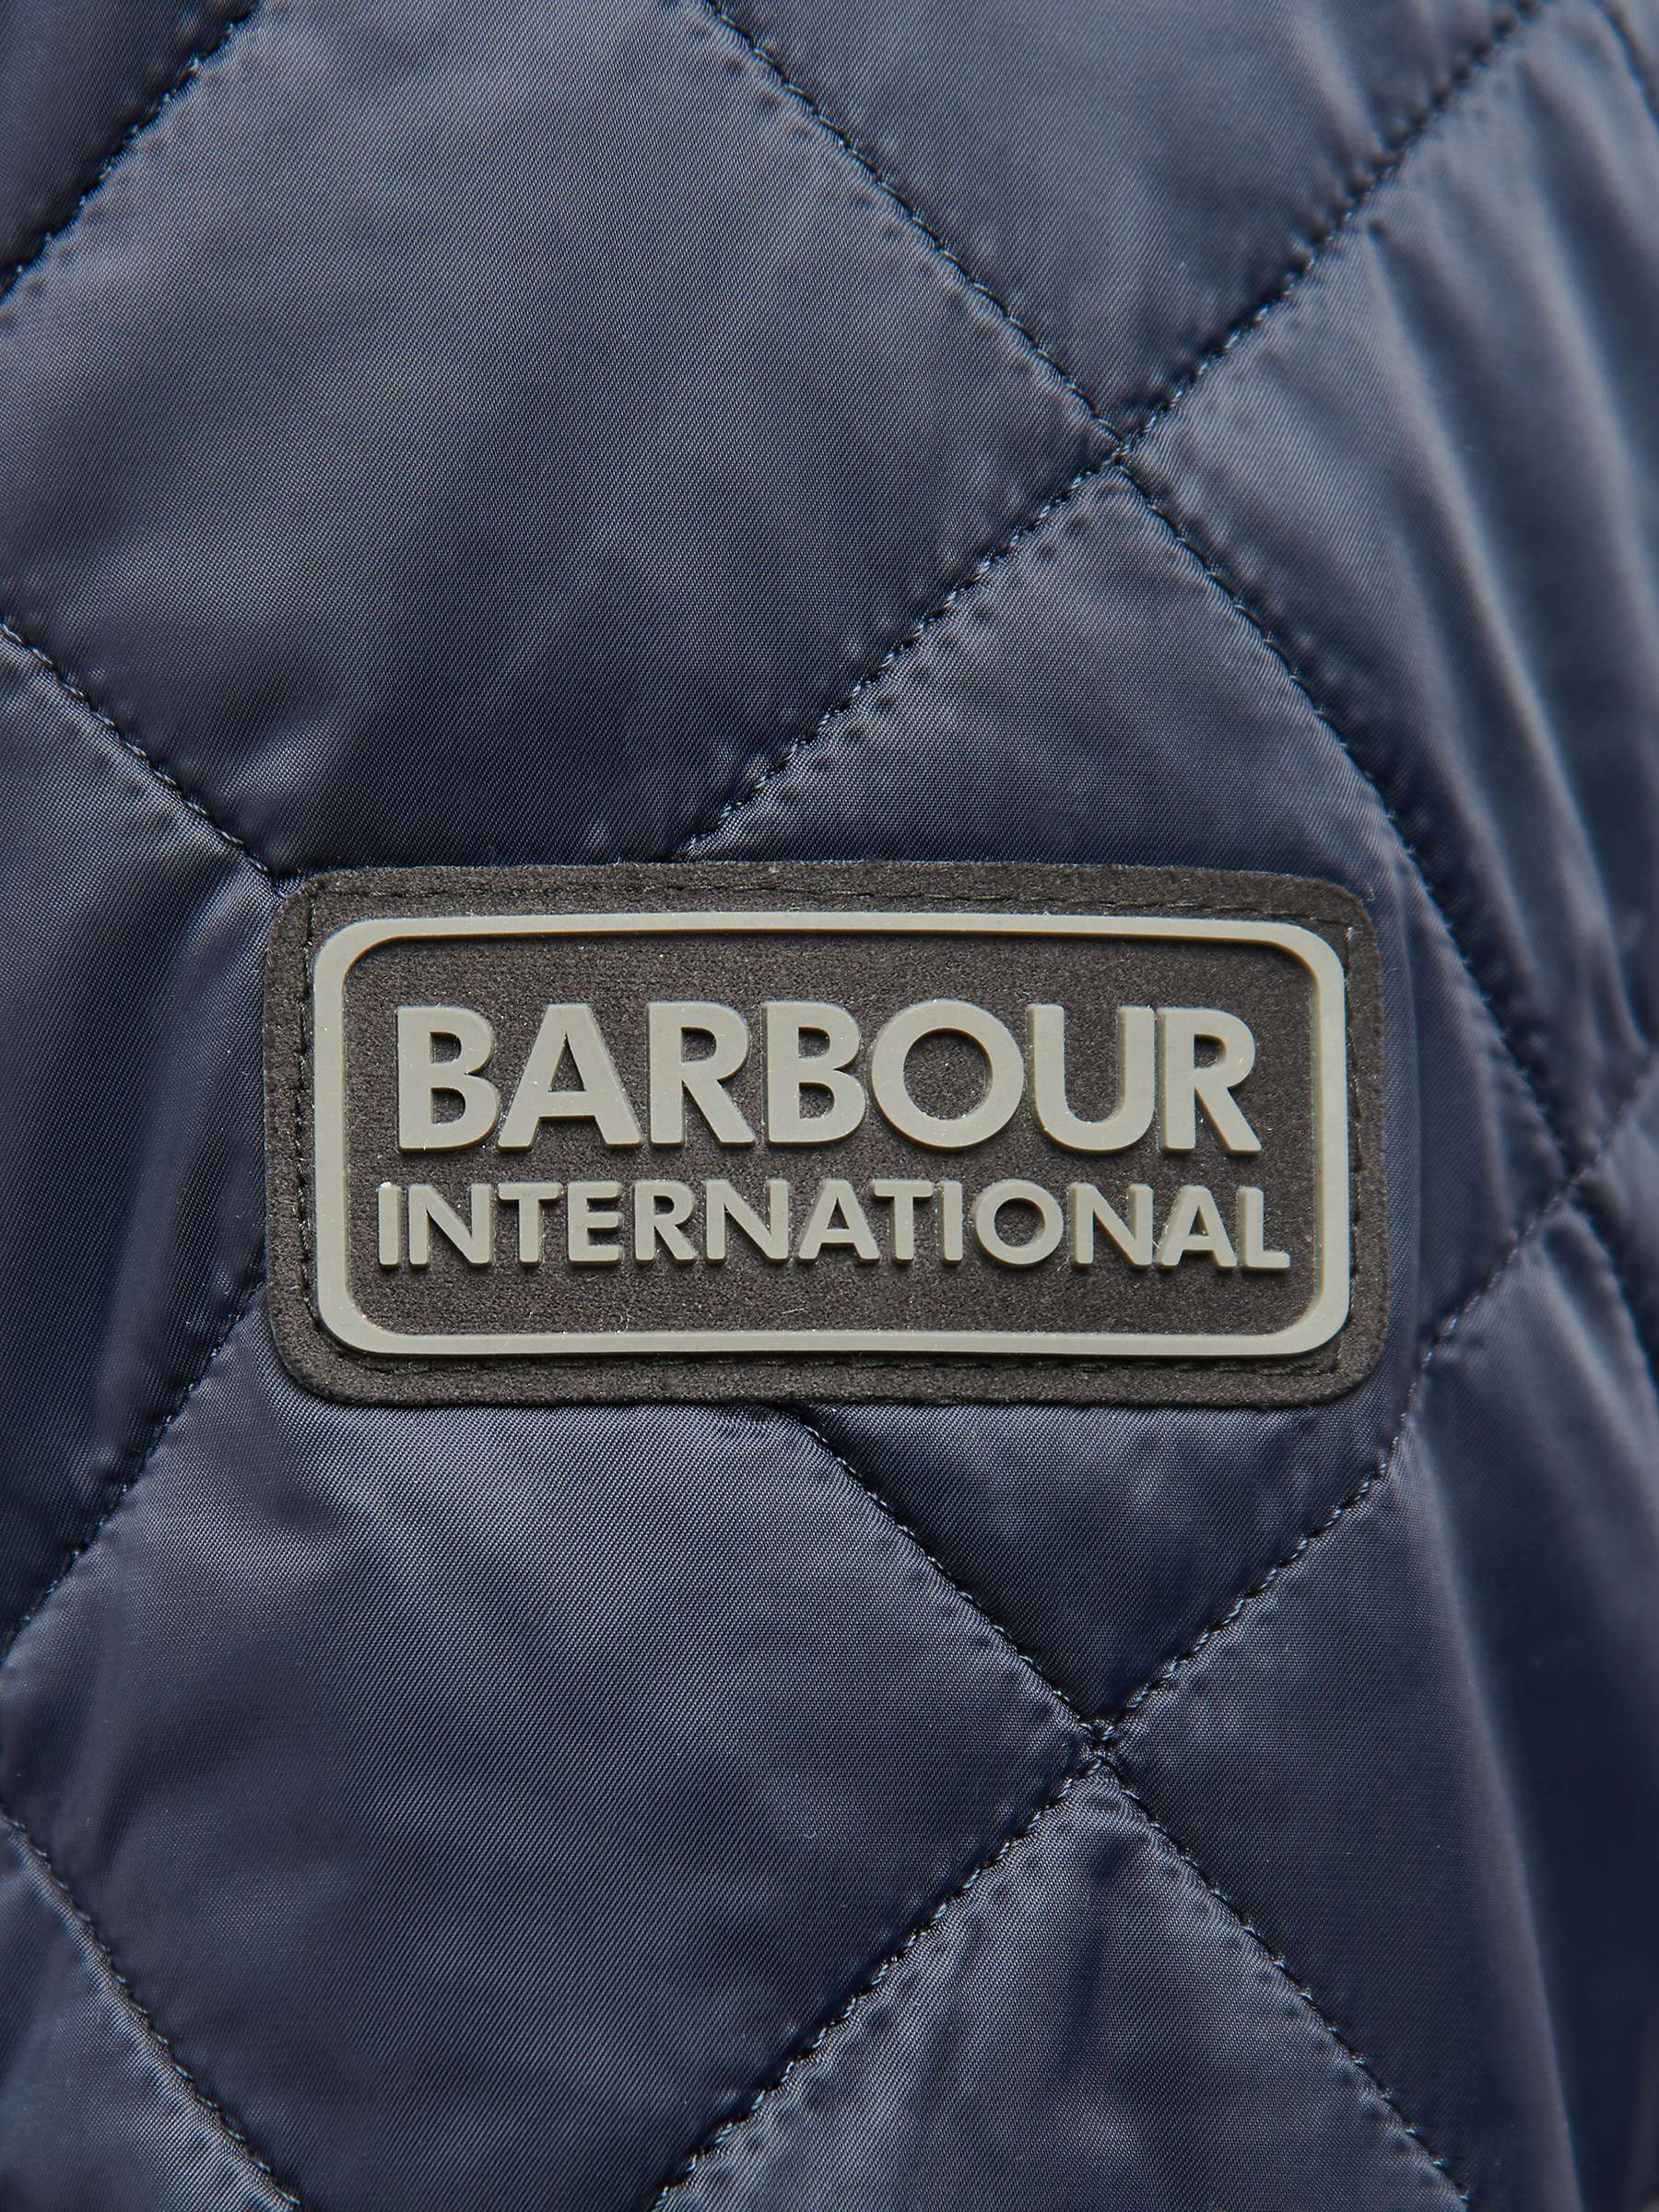 Buy Barbour International Tourer Ariel Quilted Jacket Online at johnlewis.com